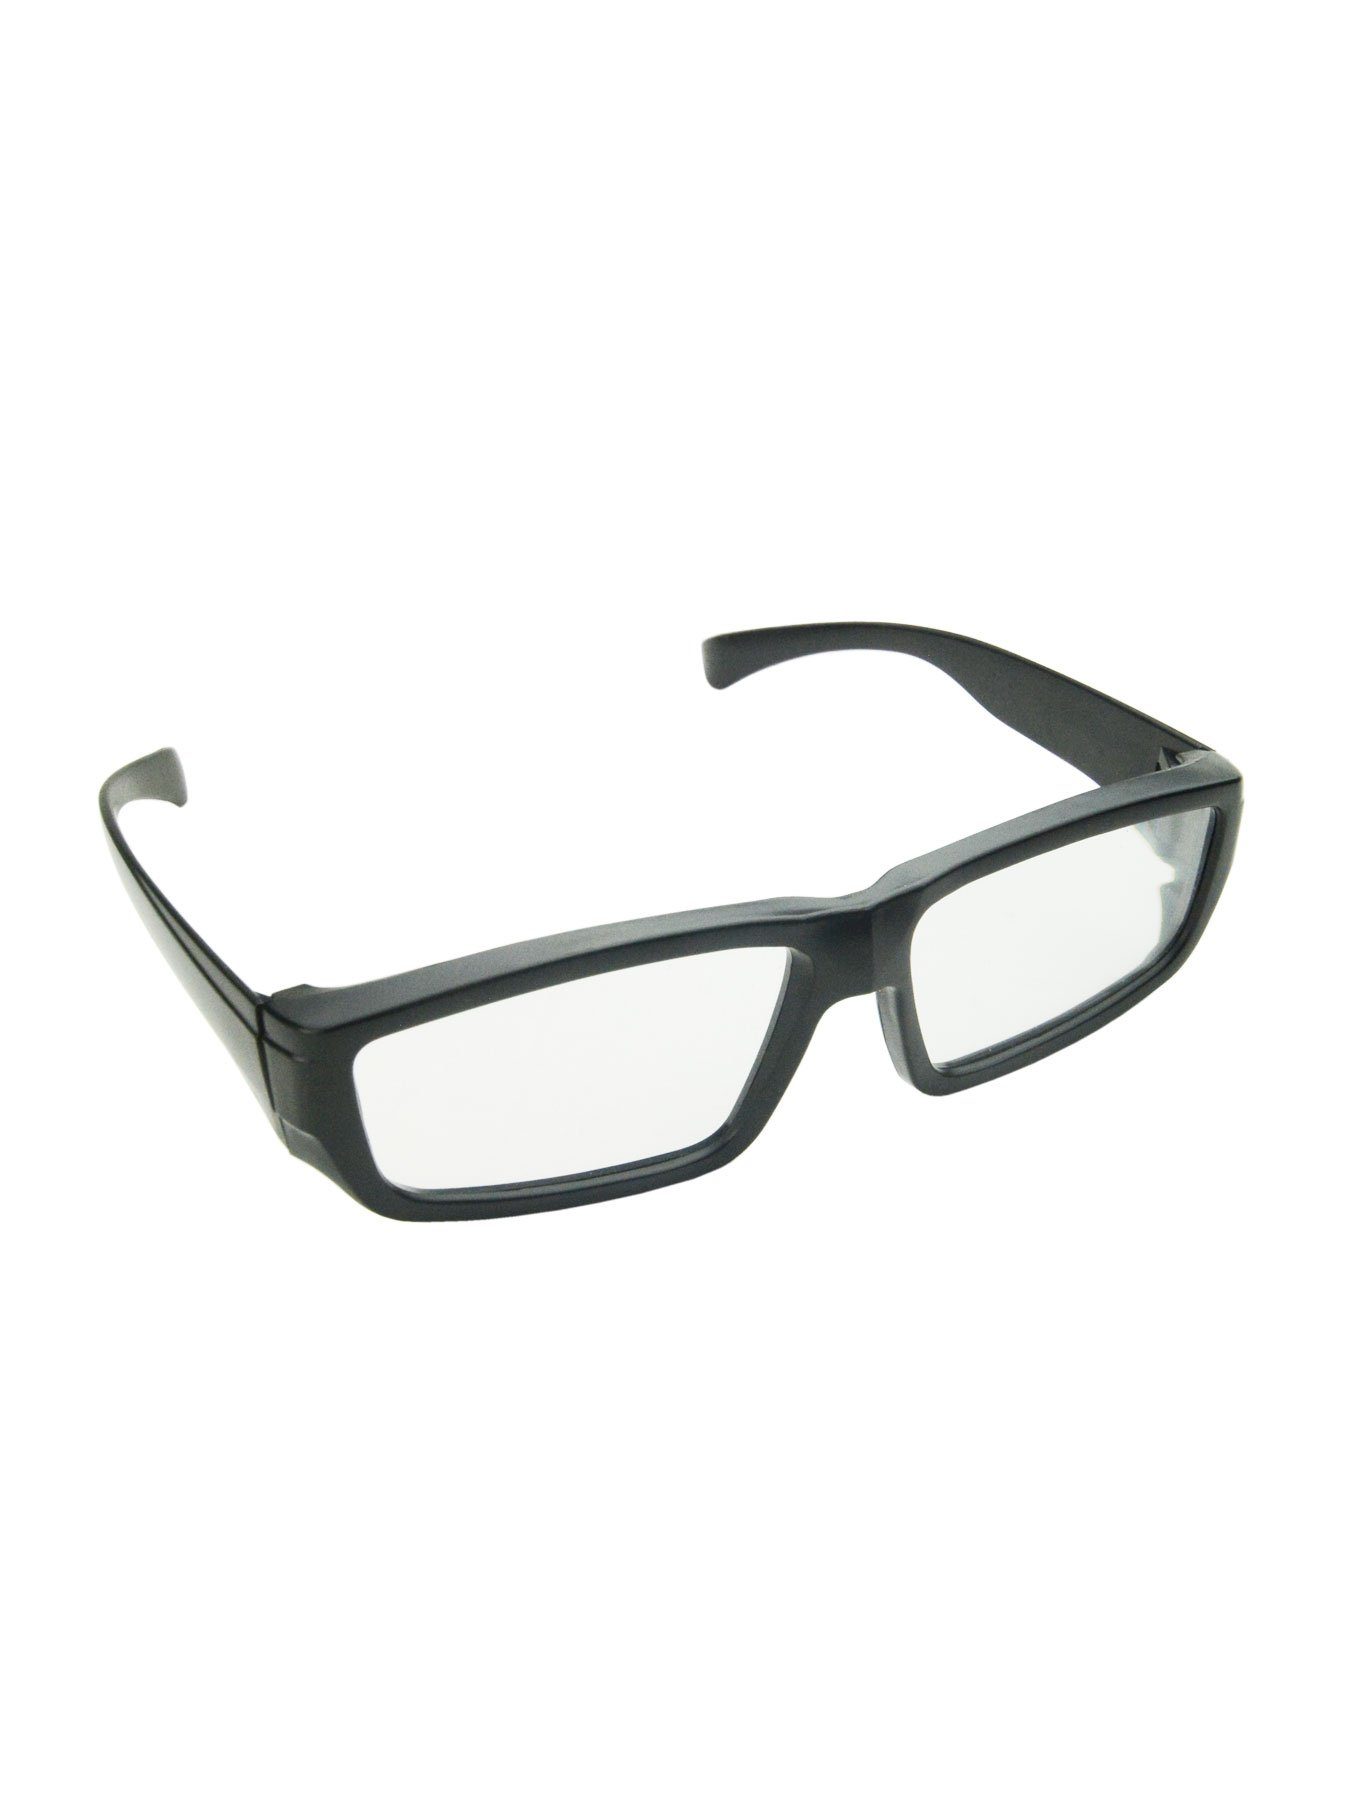 PSYWORK 3D-Brille Schwarzlicht 3D-Brille ChromaDepth Eckig Schwarz